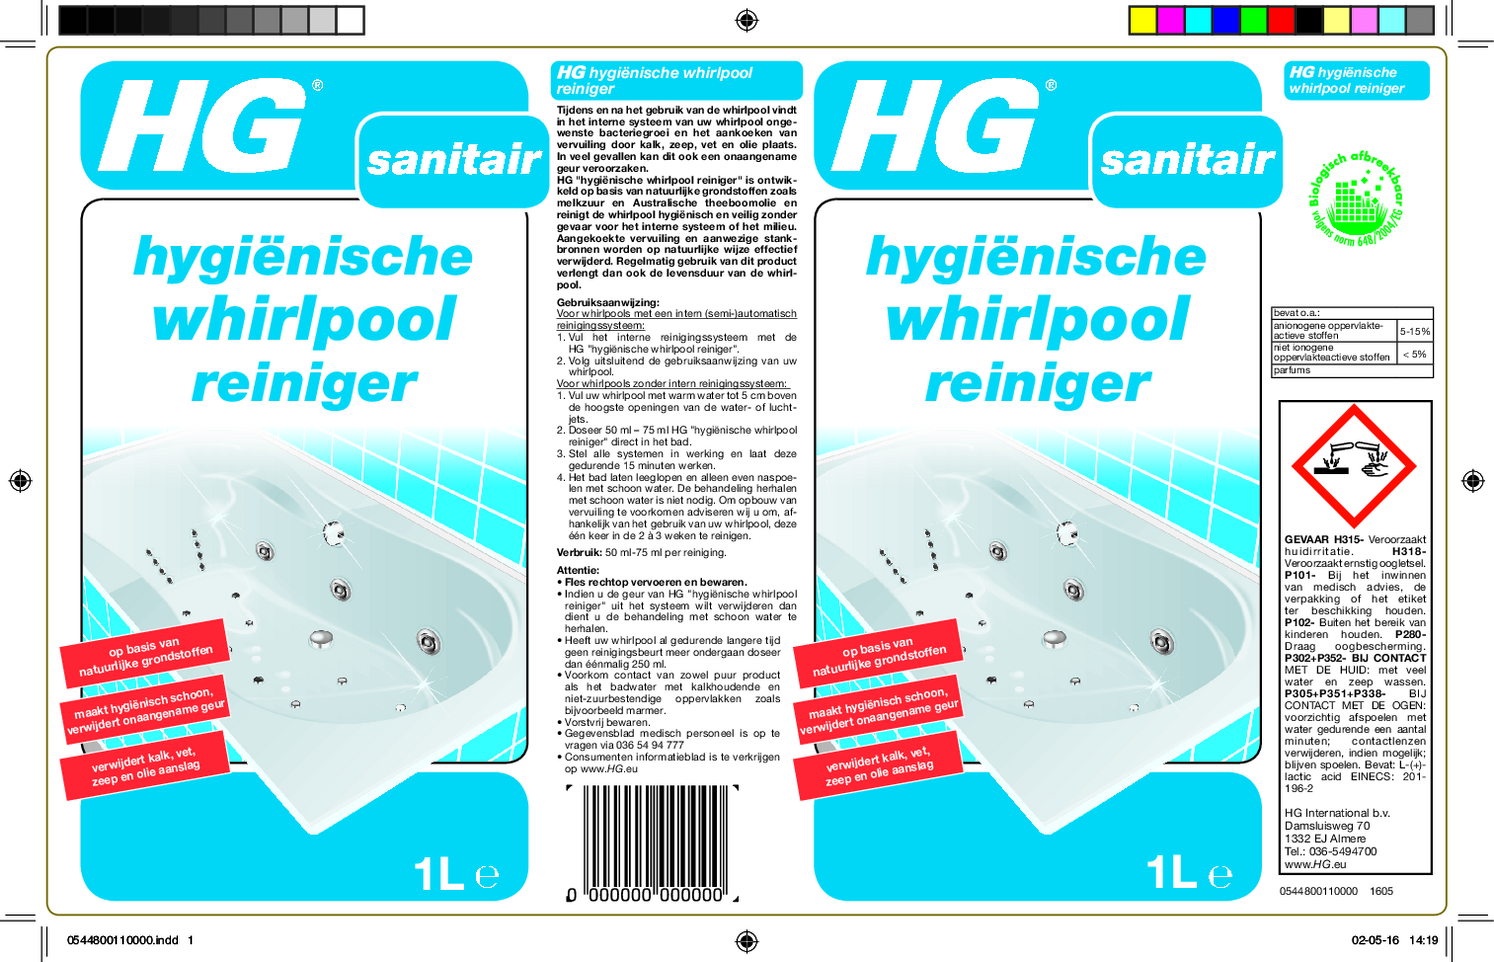 Hygienische Whirlpool Reiniger afbeelding van document #1, etiket